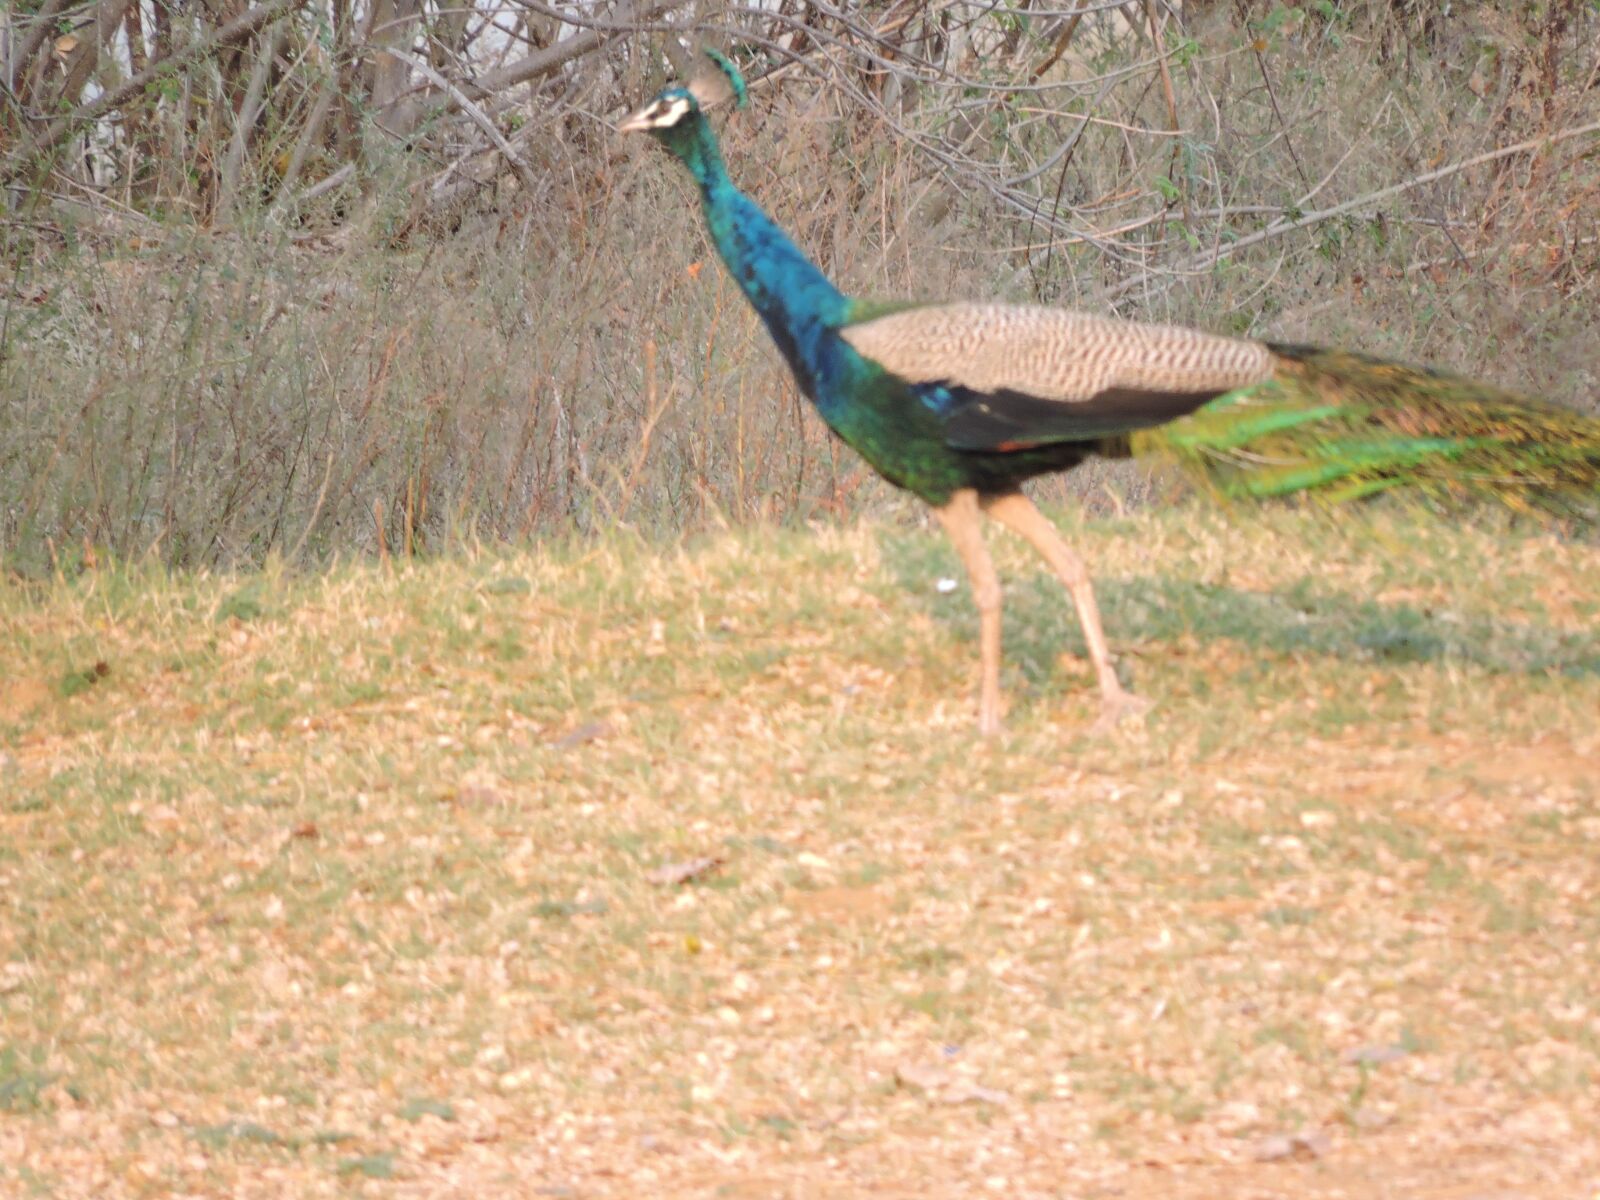 Nikon Coolpix P600 sample photo. Peacock, bird, colourful bird photography